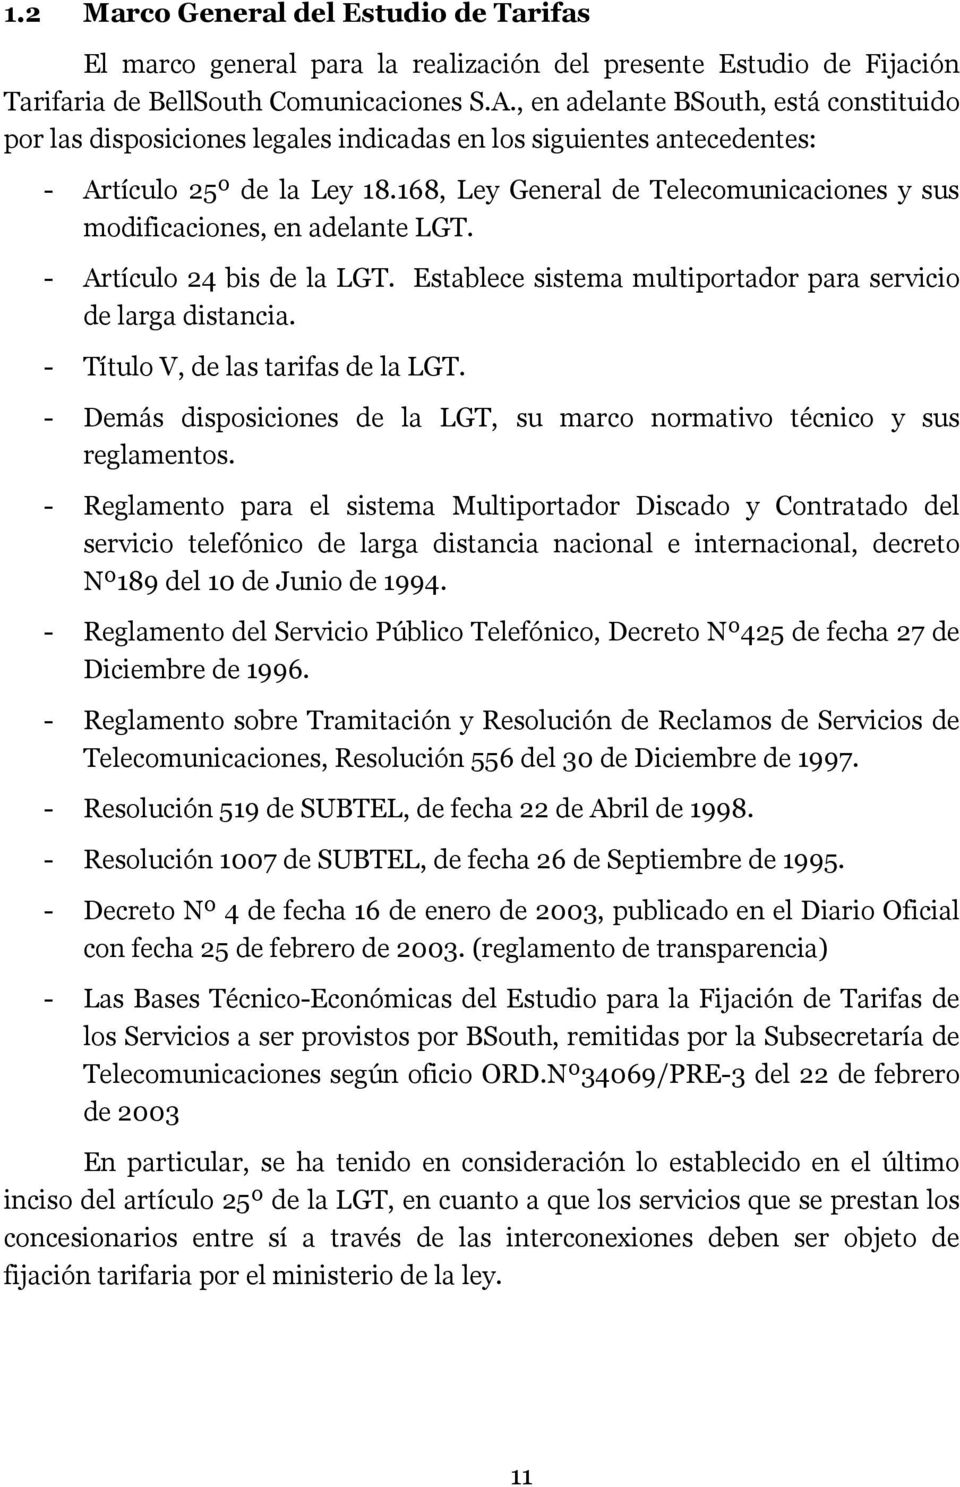 168, Ley General de Telecomunicaciones y sus modificaciones, en adelante LGT. - Artículo 24 bis de la LGT. Establece sistema multiportador para servicio de larga distancia.